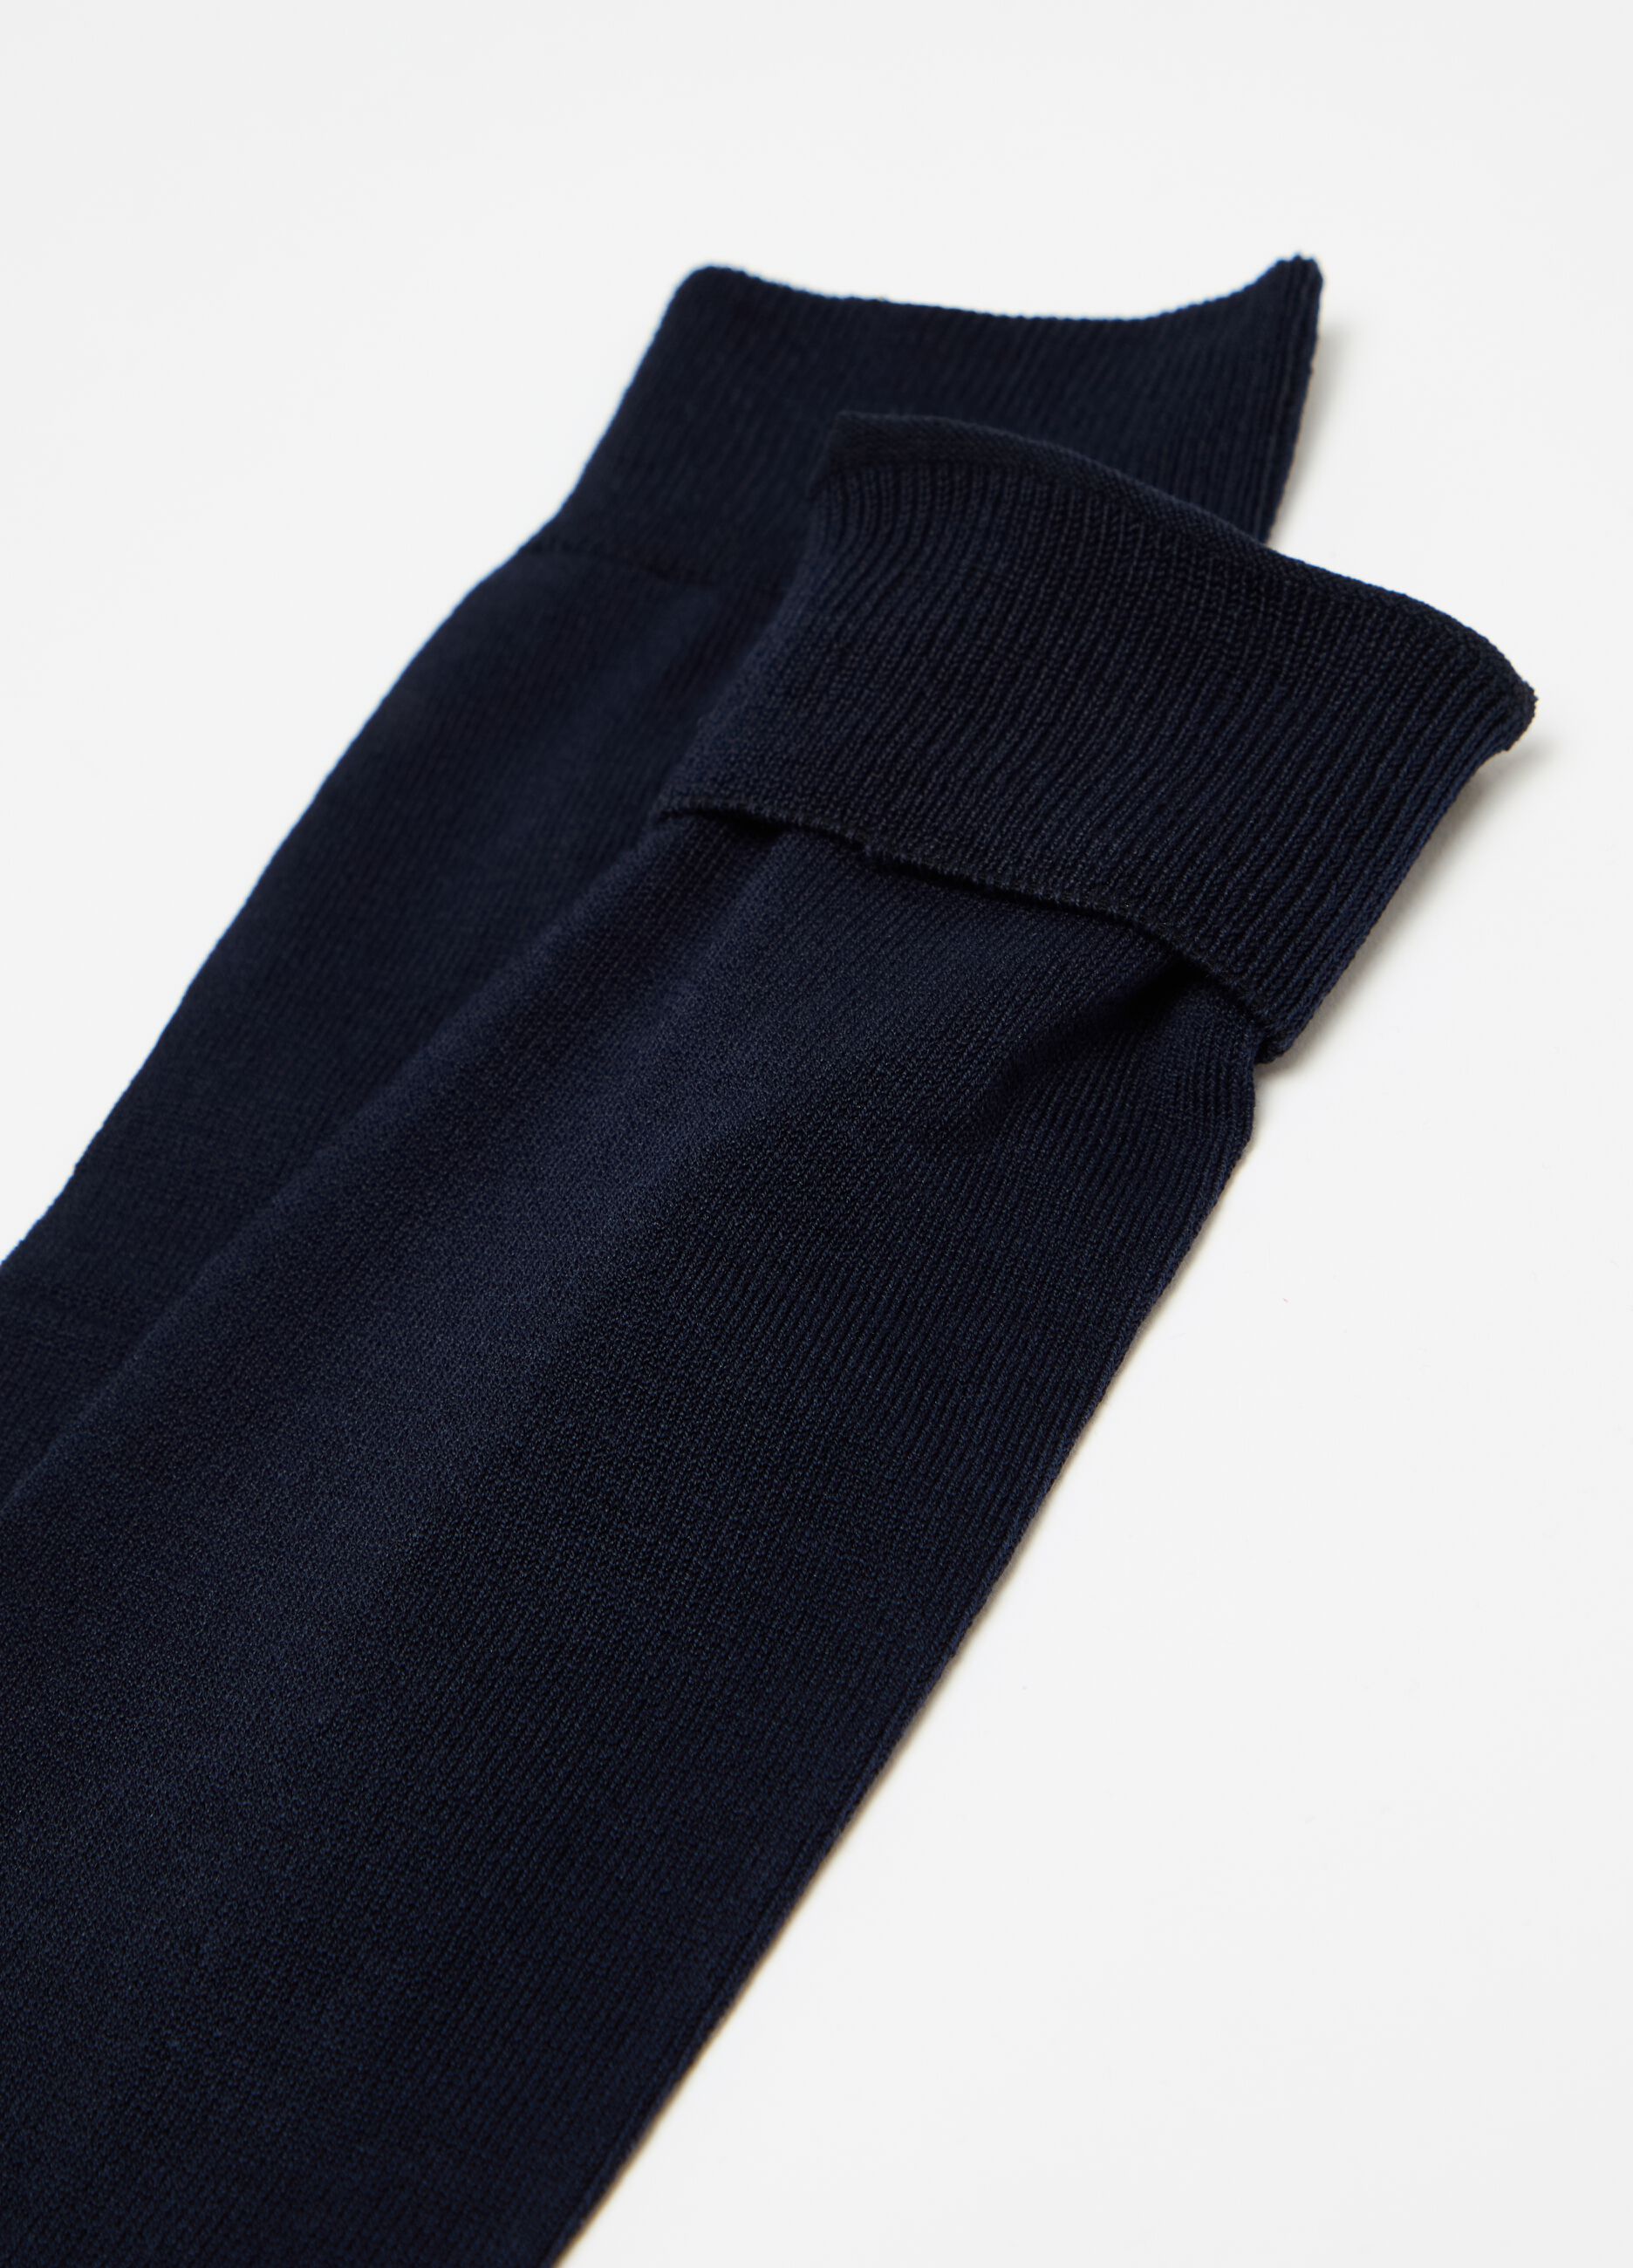 Tripack calze lunghe in cotone stretch